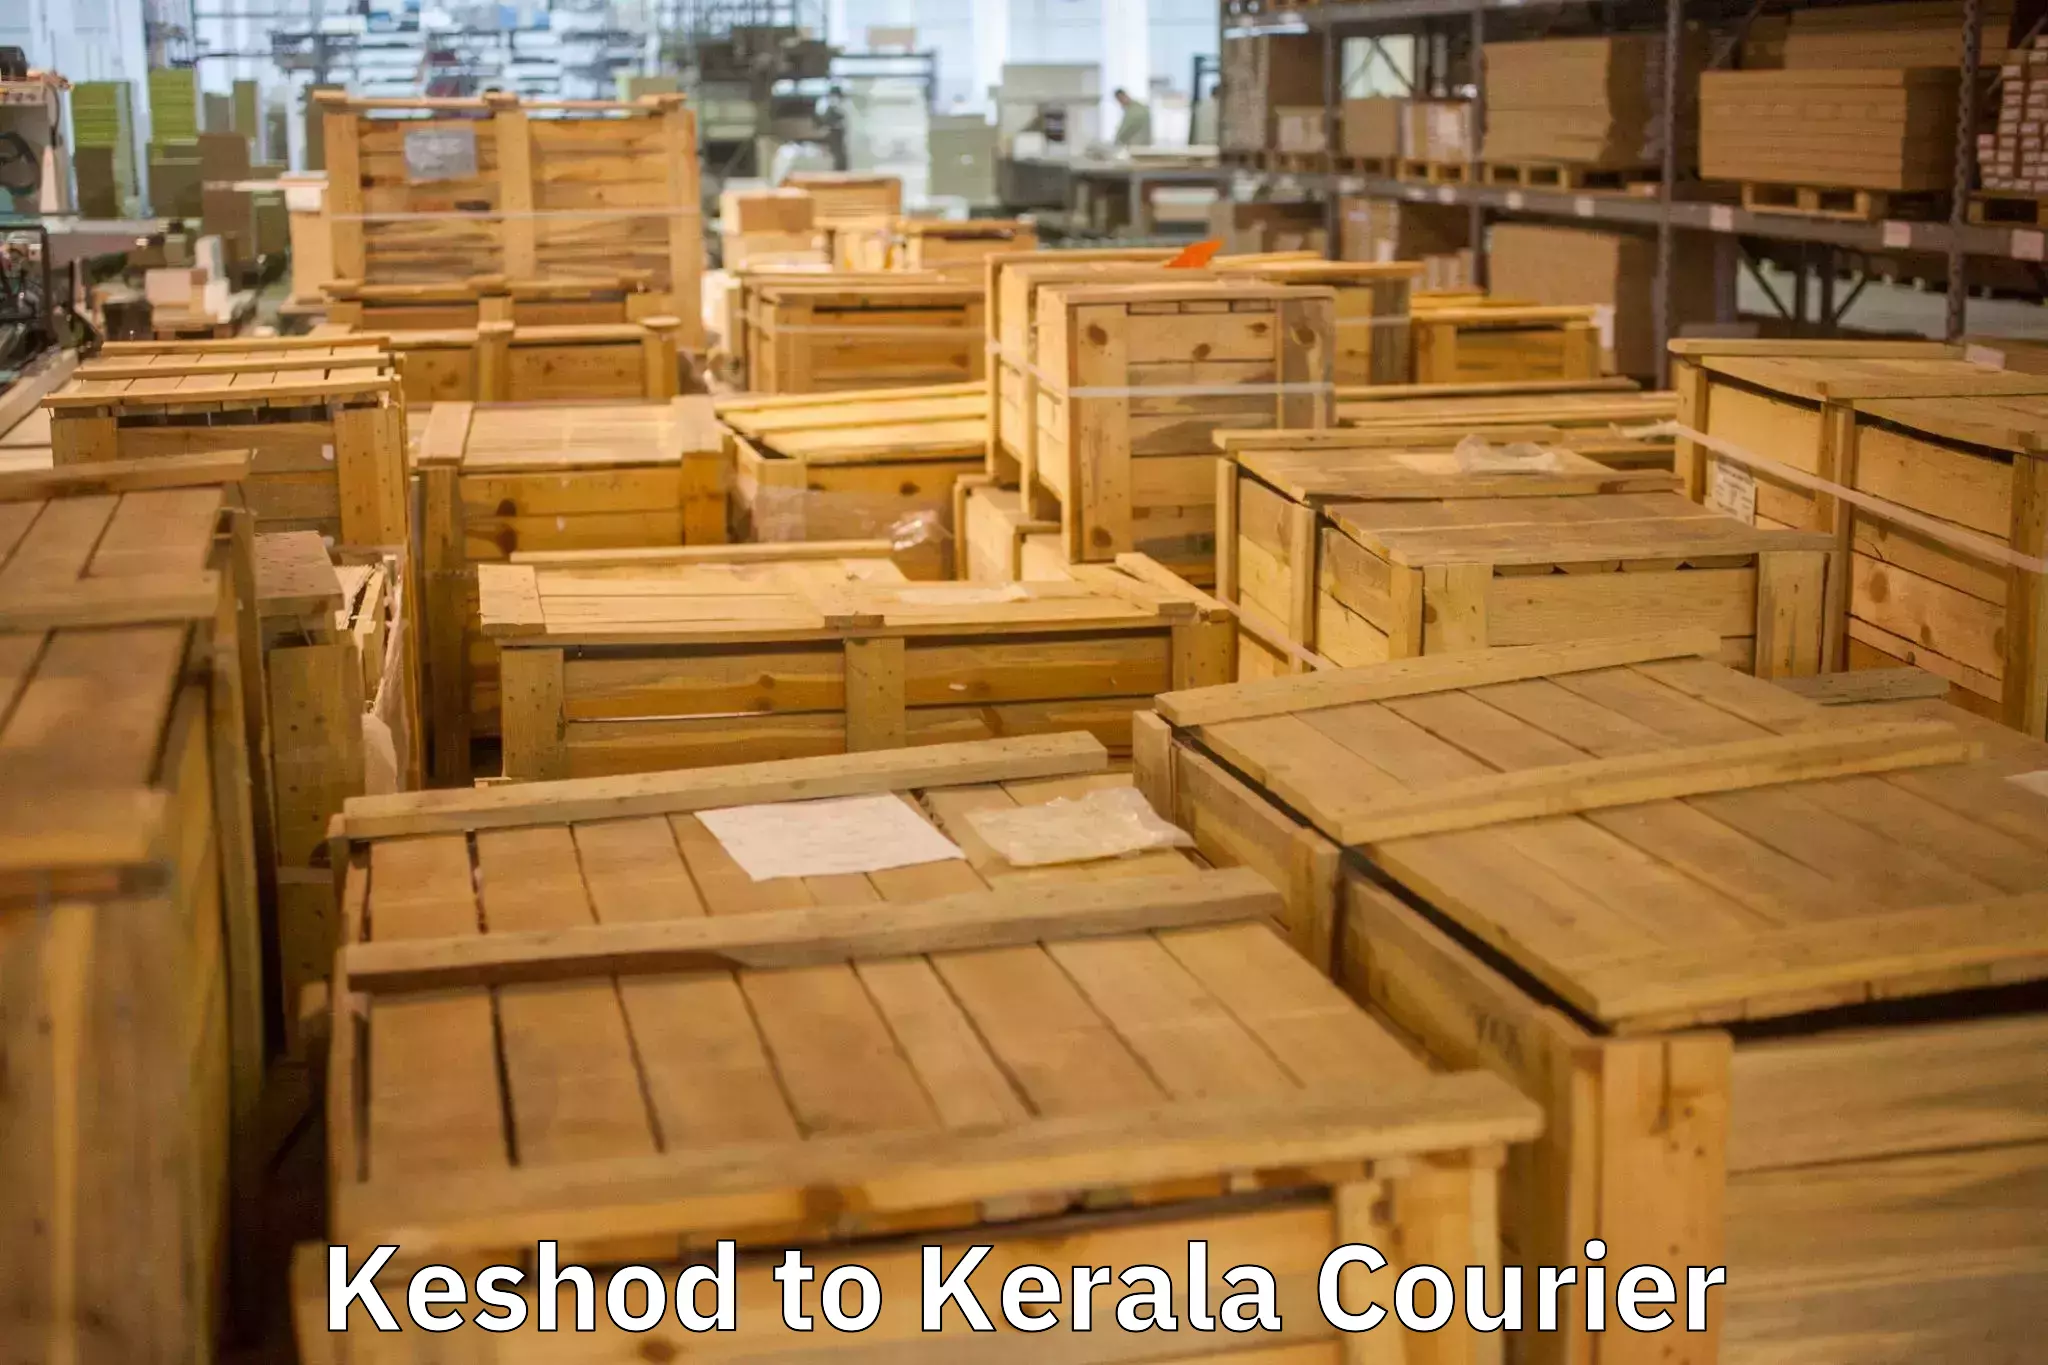 Furniture transport experts Keshod to Koothattukulam